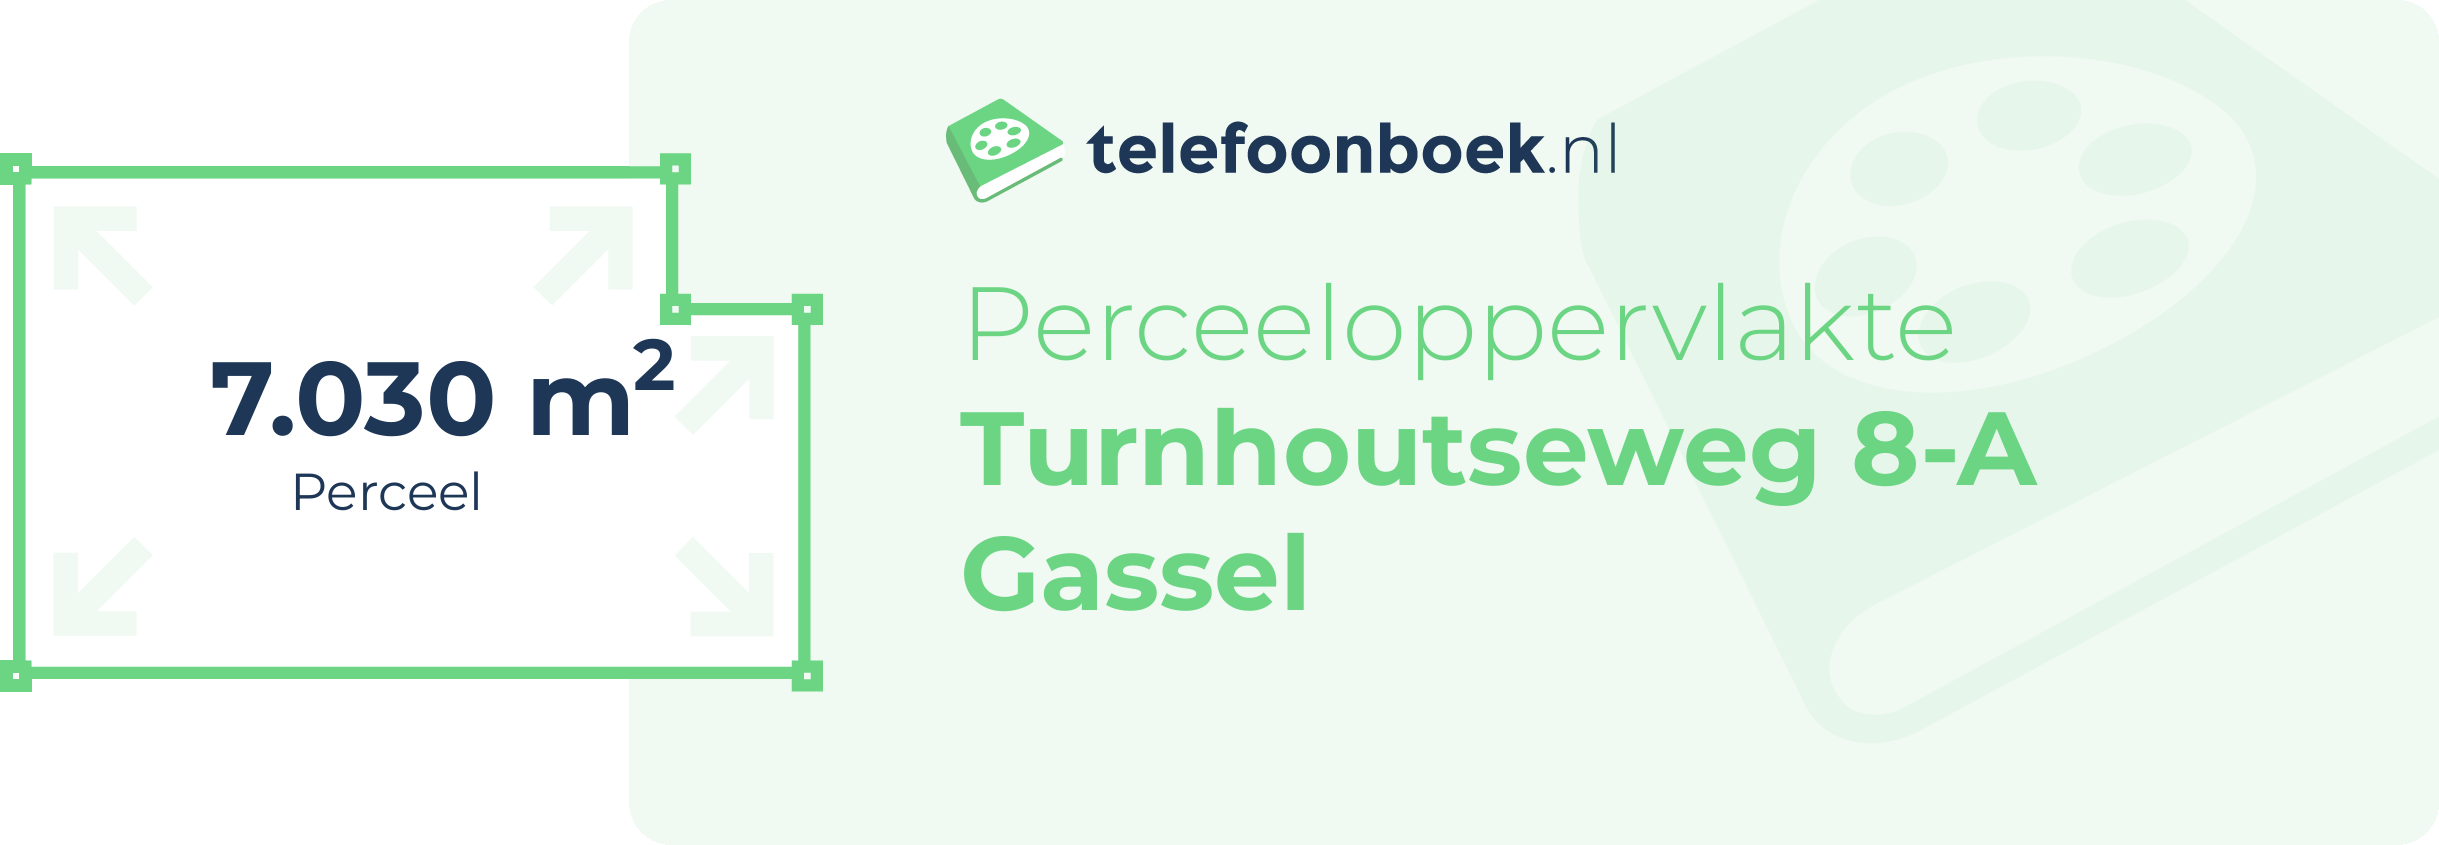 Perceeloppervlakte Turnhoutseweg 8-A Gassel